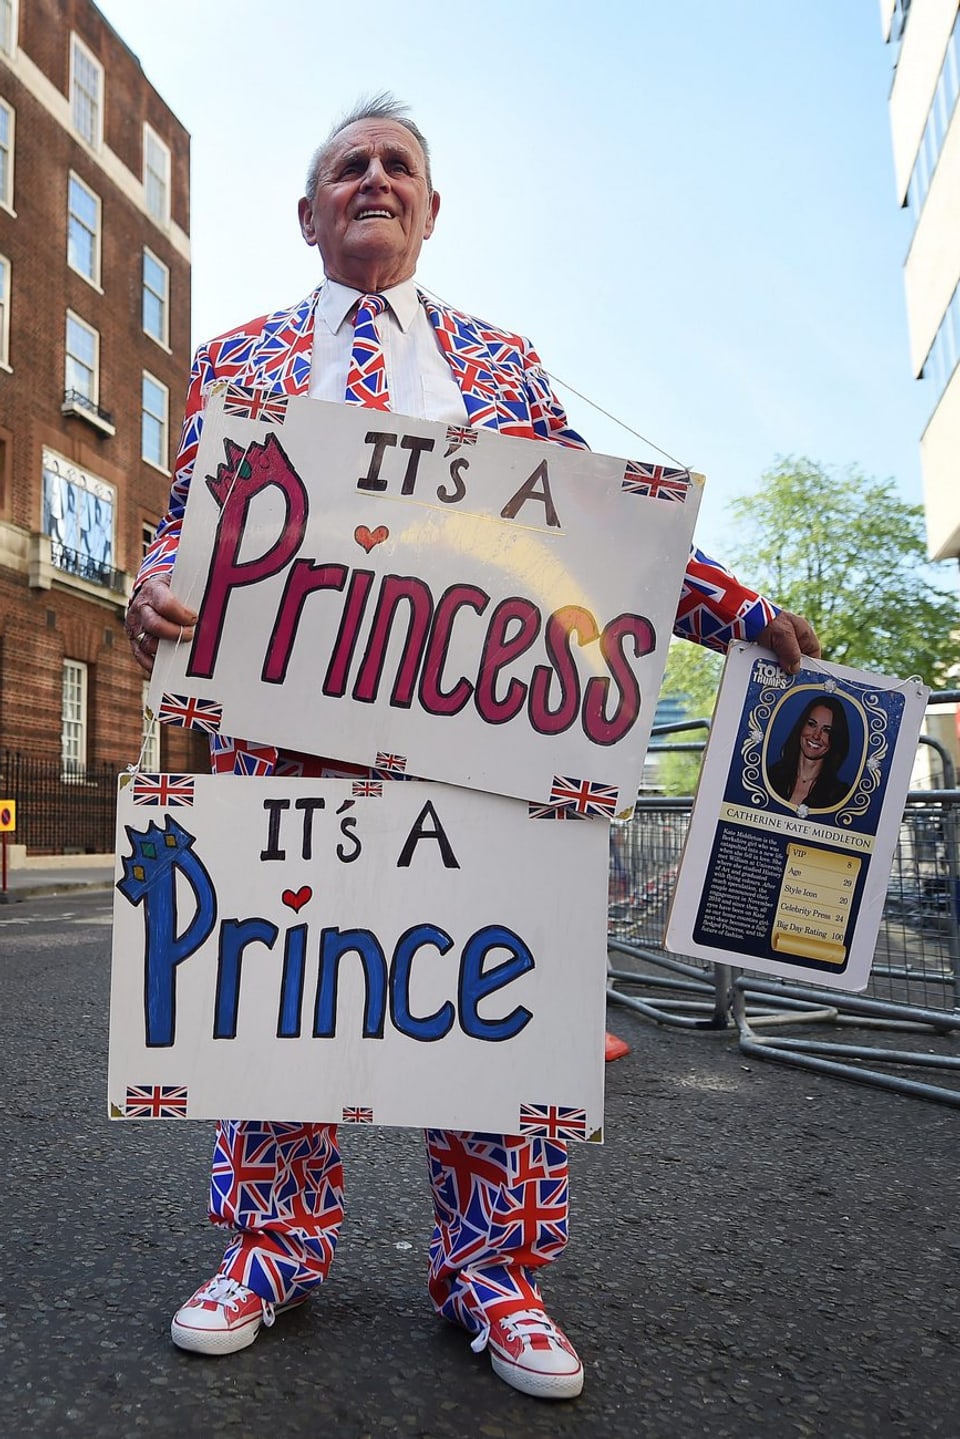 Ein Mann hält zwei Plakate, welche die Geburt einer Prinzessin oder eines Prinzen verkündet.